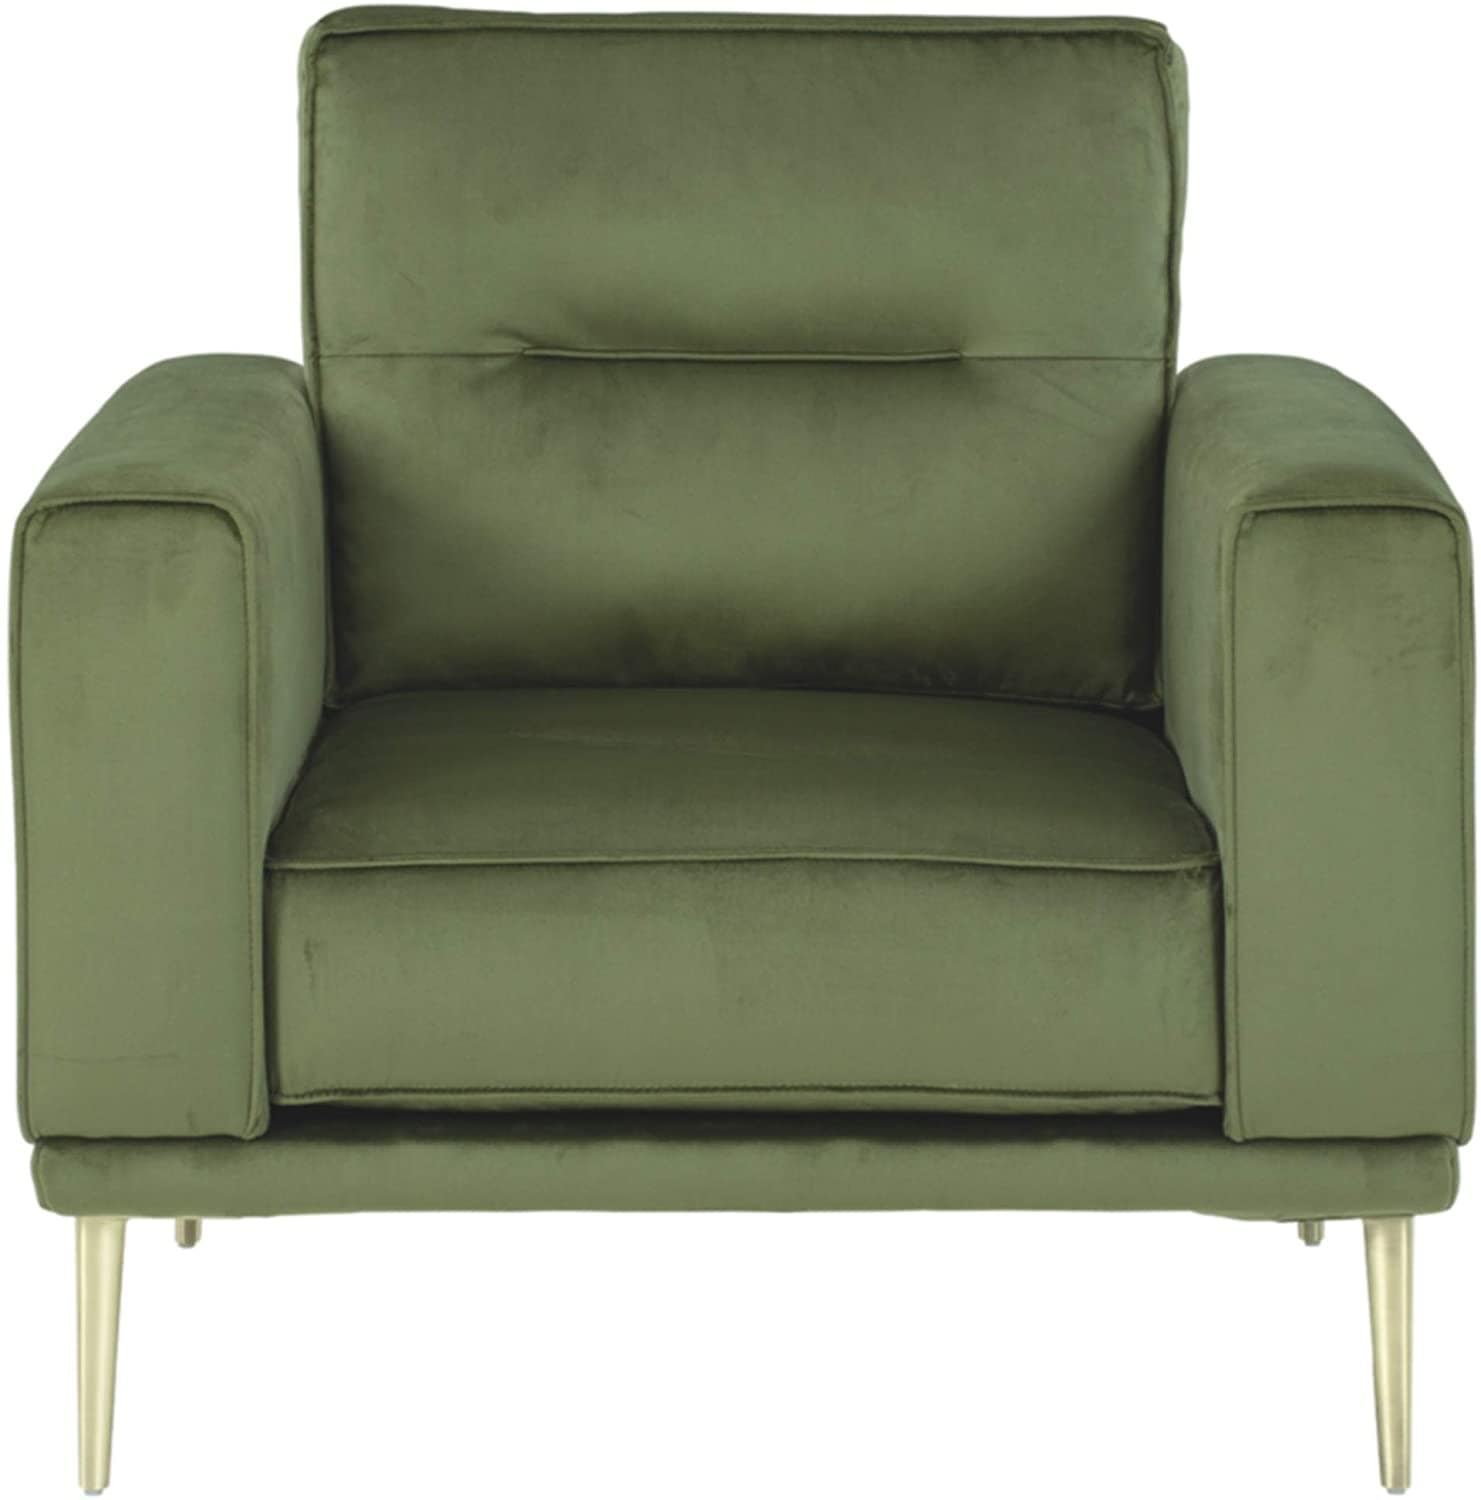 Velvet Modern Fabric Arm Chair For office, living room, bedroom